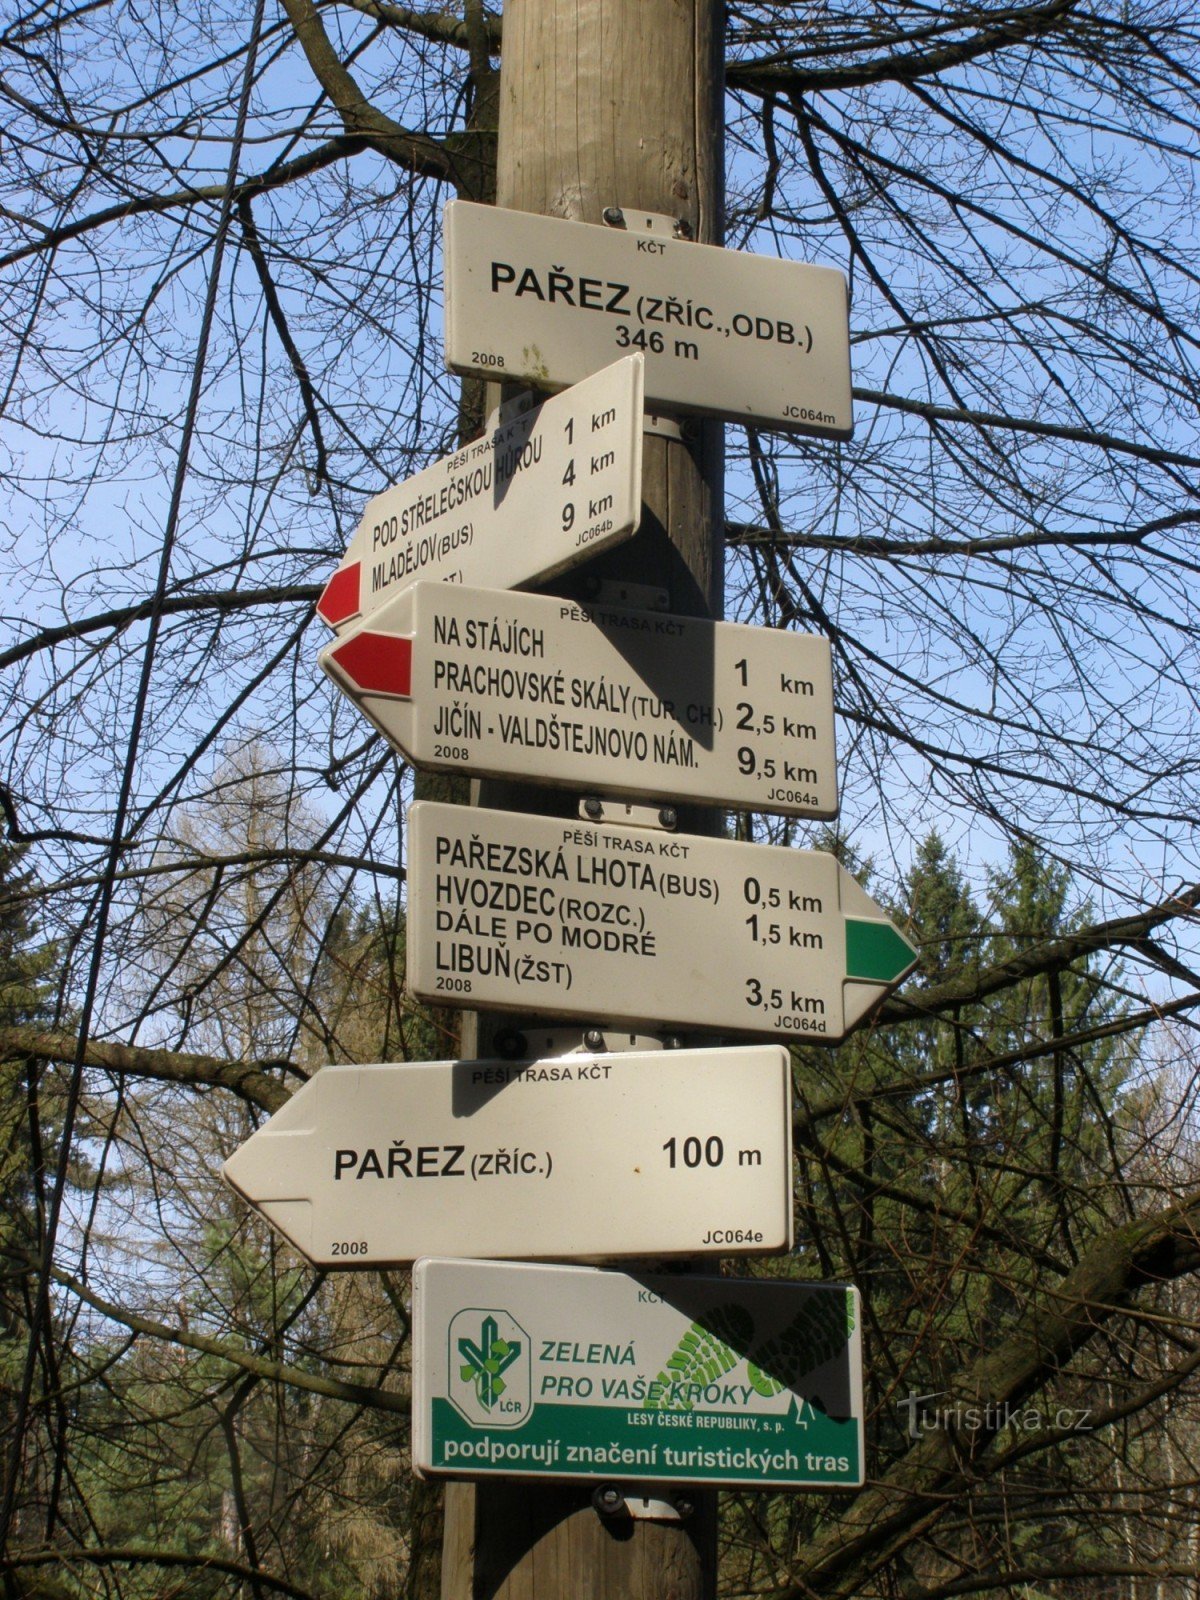 τουριστικό σταυροδρόμι Pařez